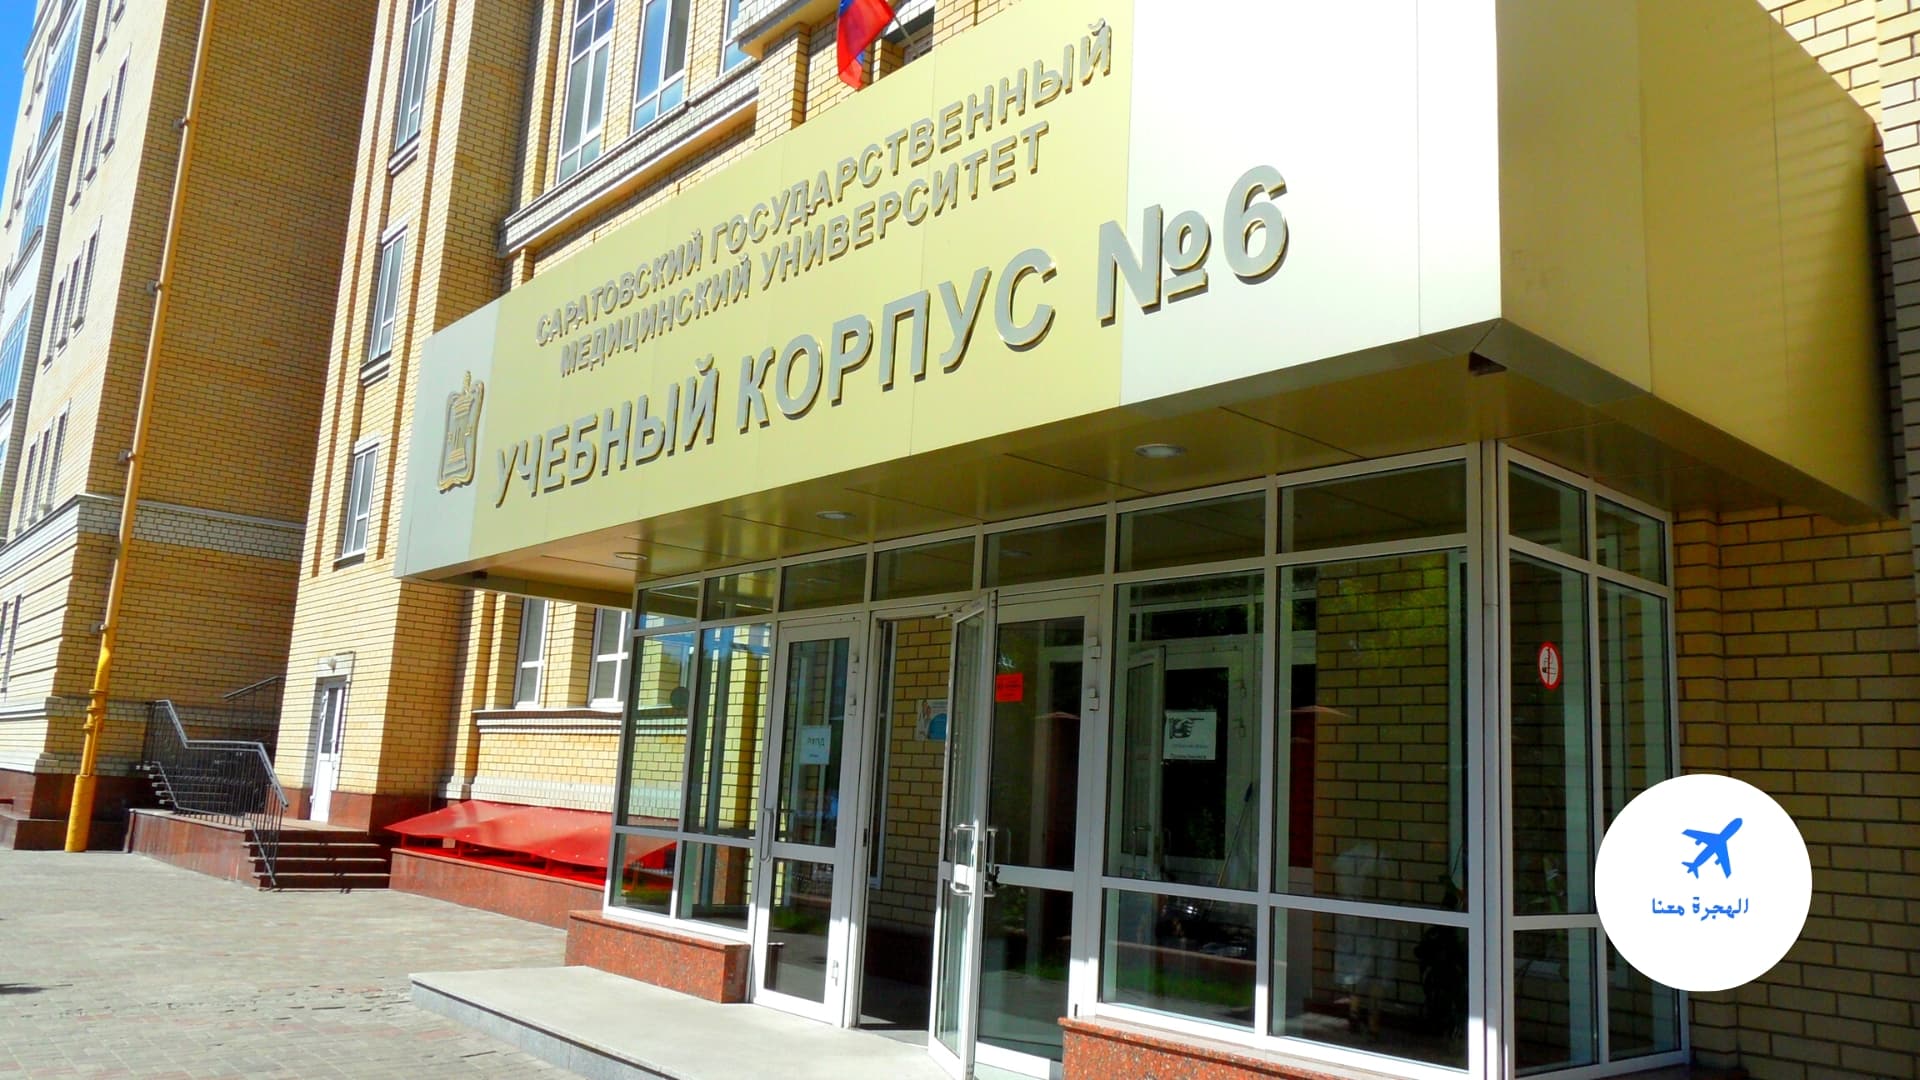 مصاريف جامعة ساراتوف الطبية الحكومية